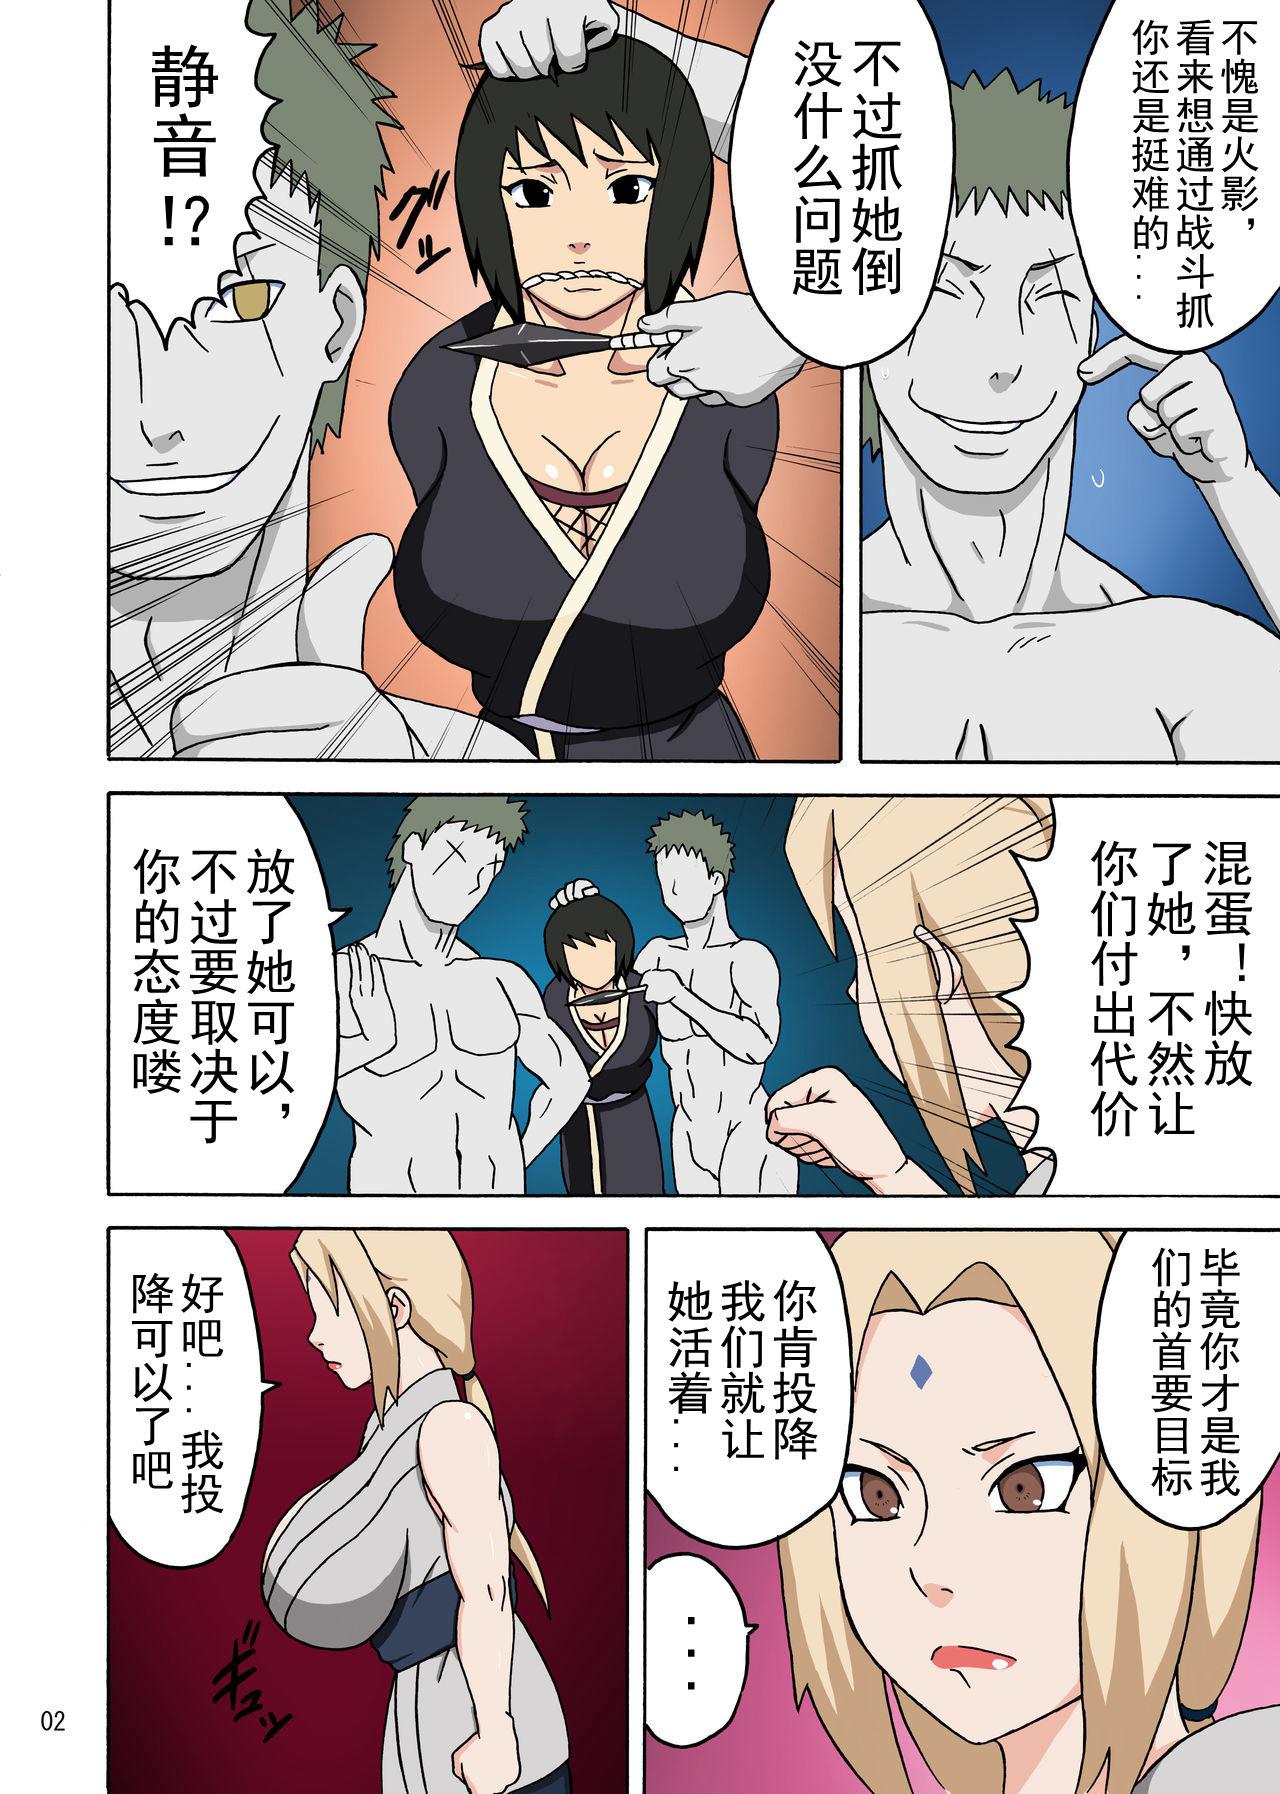 Nasty Free Porn Tsunade no In Kangoku R - Naruto Women - Page 3